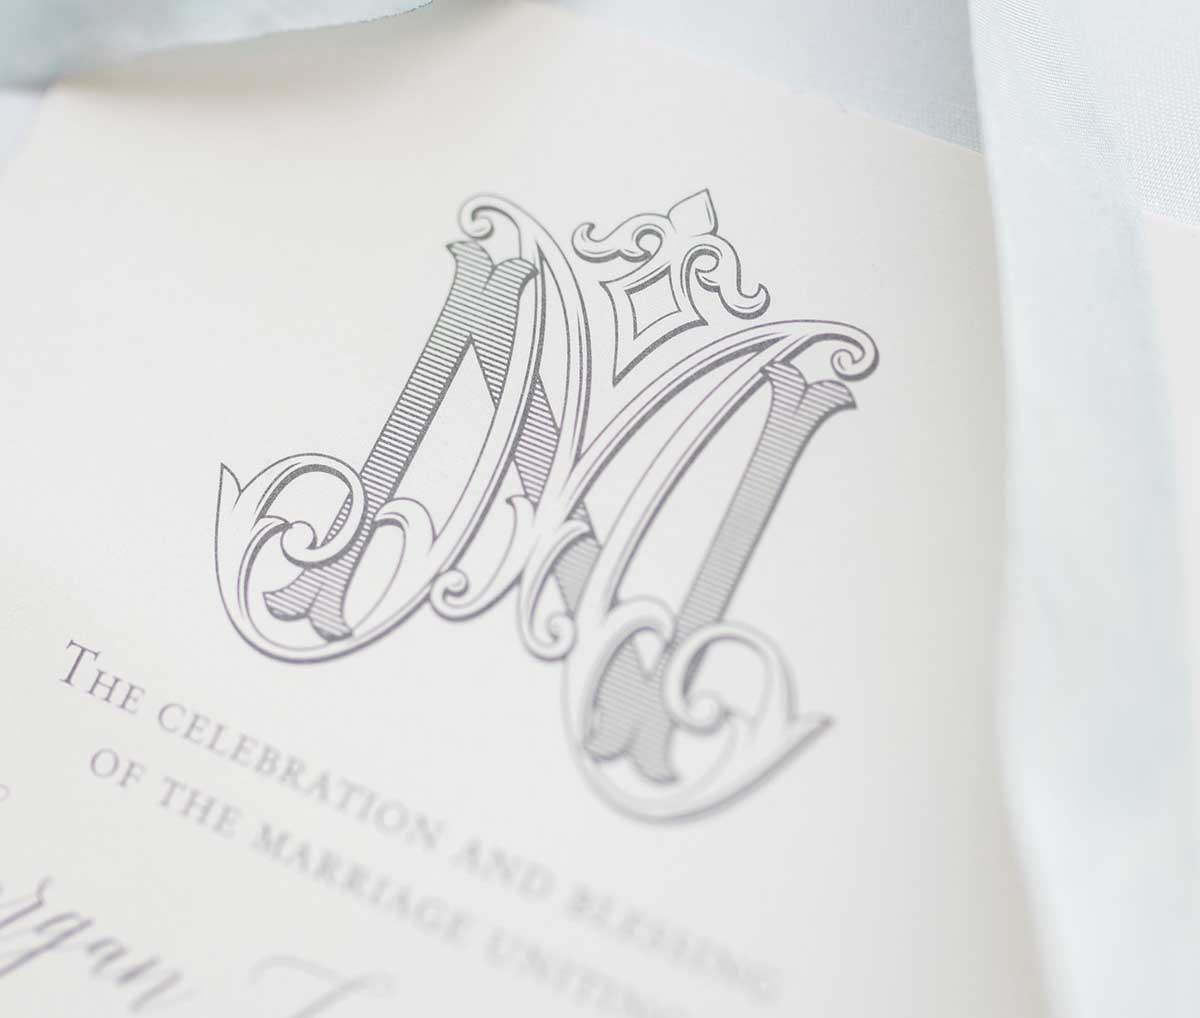 Initial letter LV wedding monogram logo design inspiration